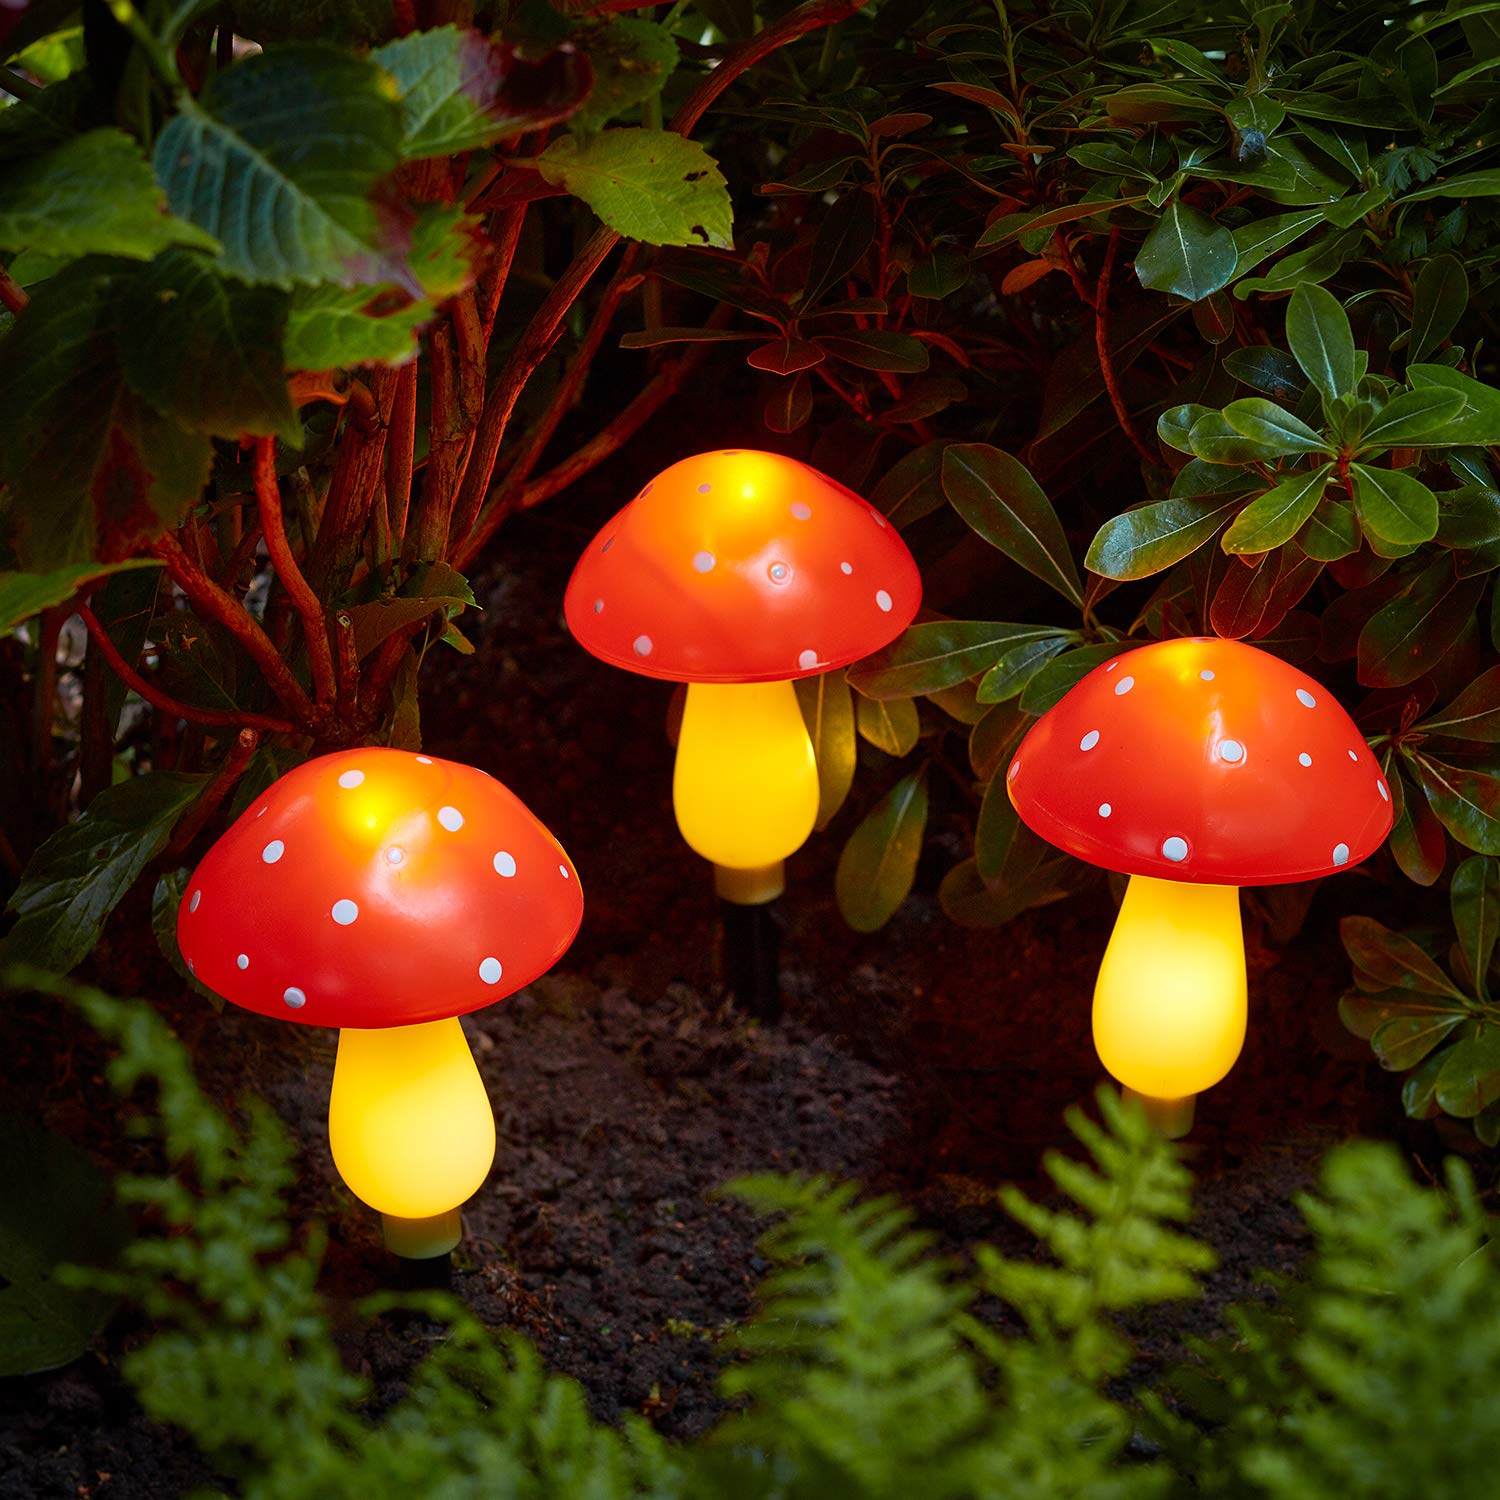 Lights4fun 9er LED Solarleuchte Pilze Solar Lichterkette Fliegenpilze warmweiß Solarleuchten Pilz Garten Leuchten Solar Lichterkette Pilze Mushroom Lamp